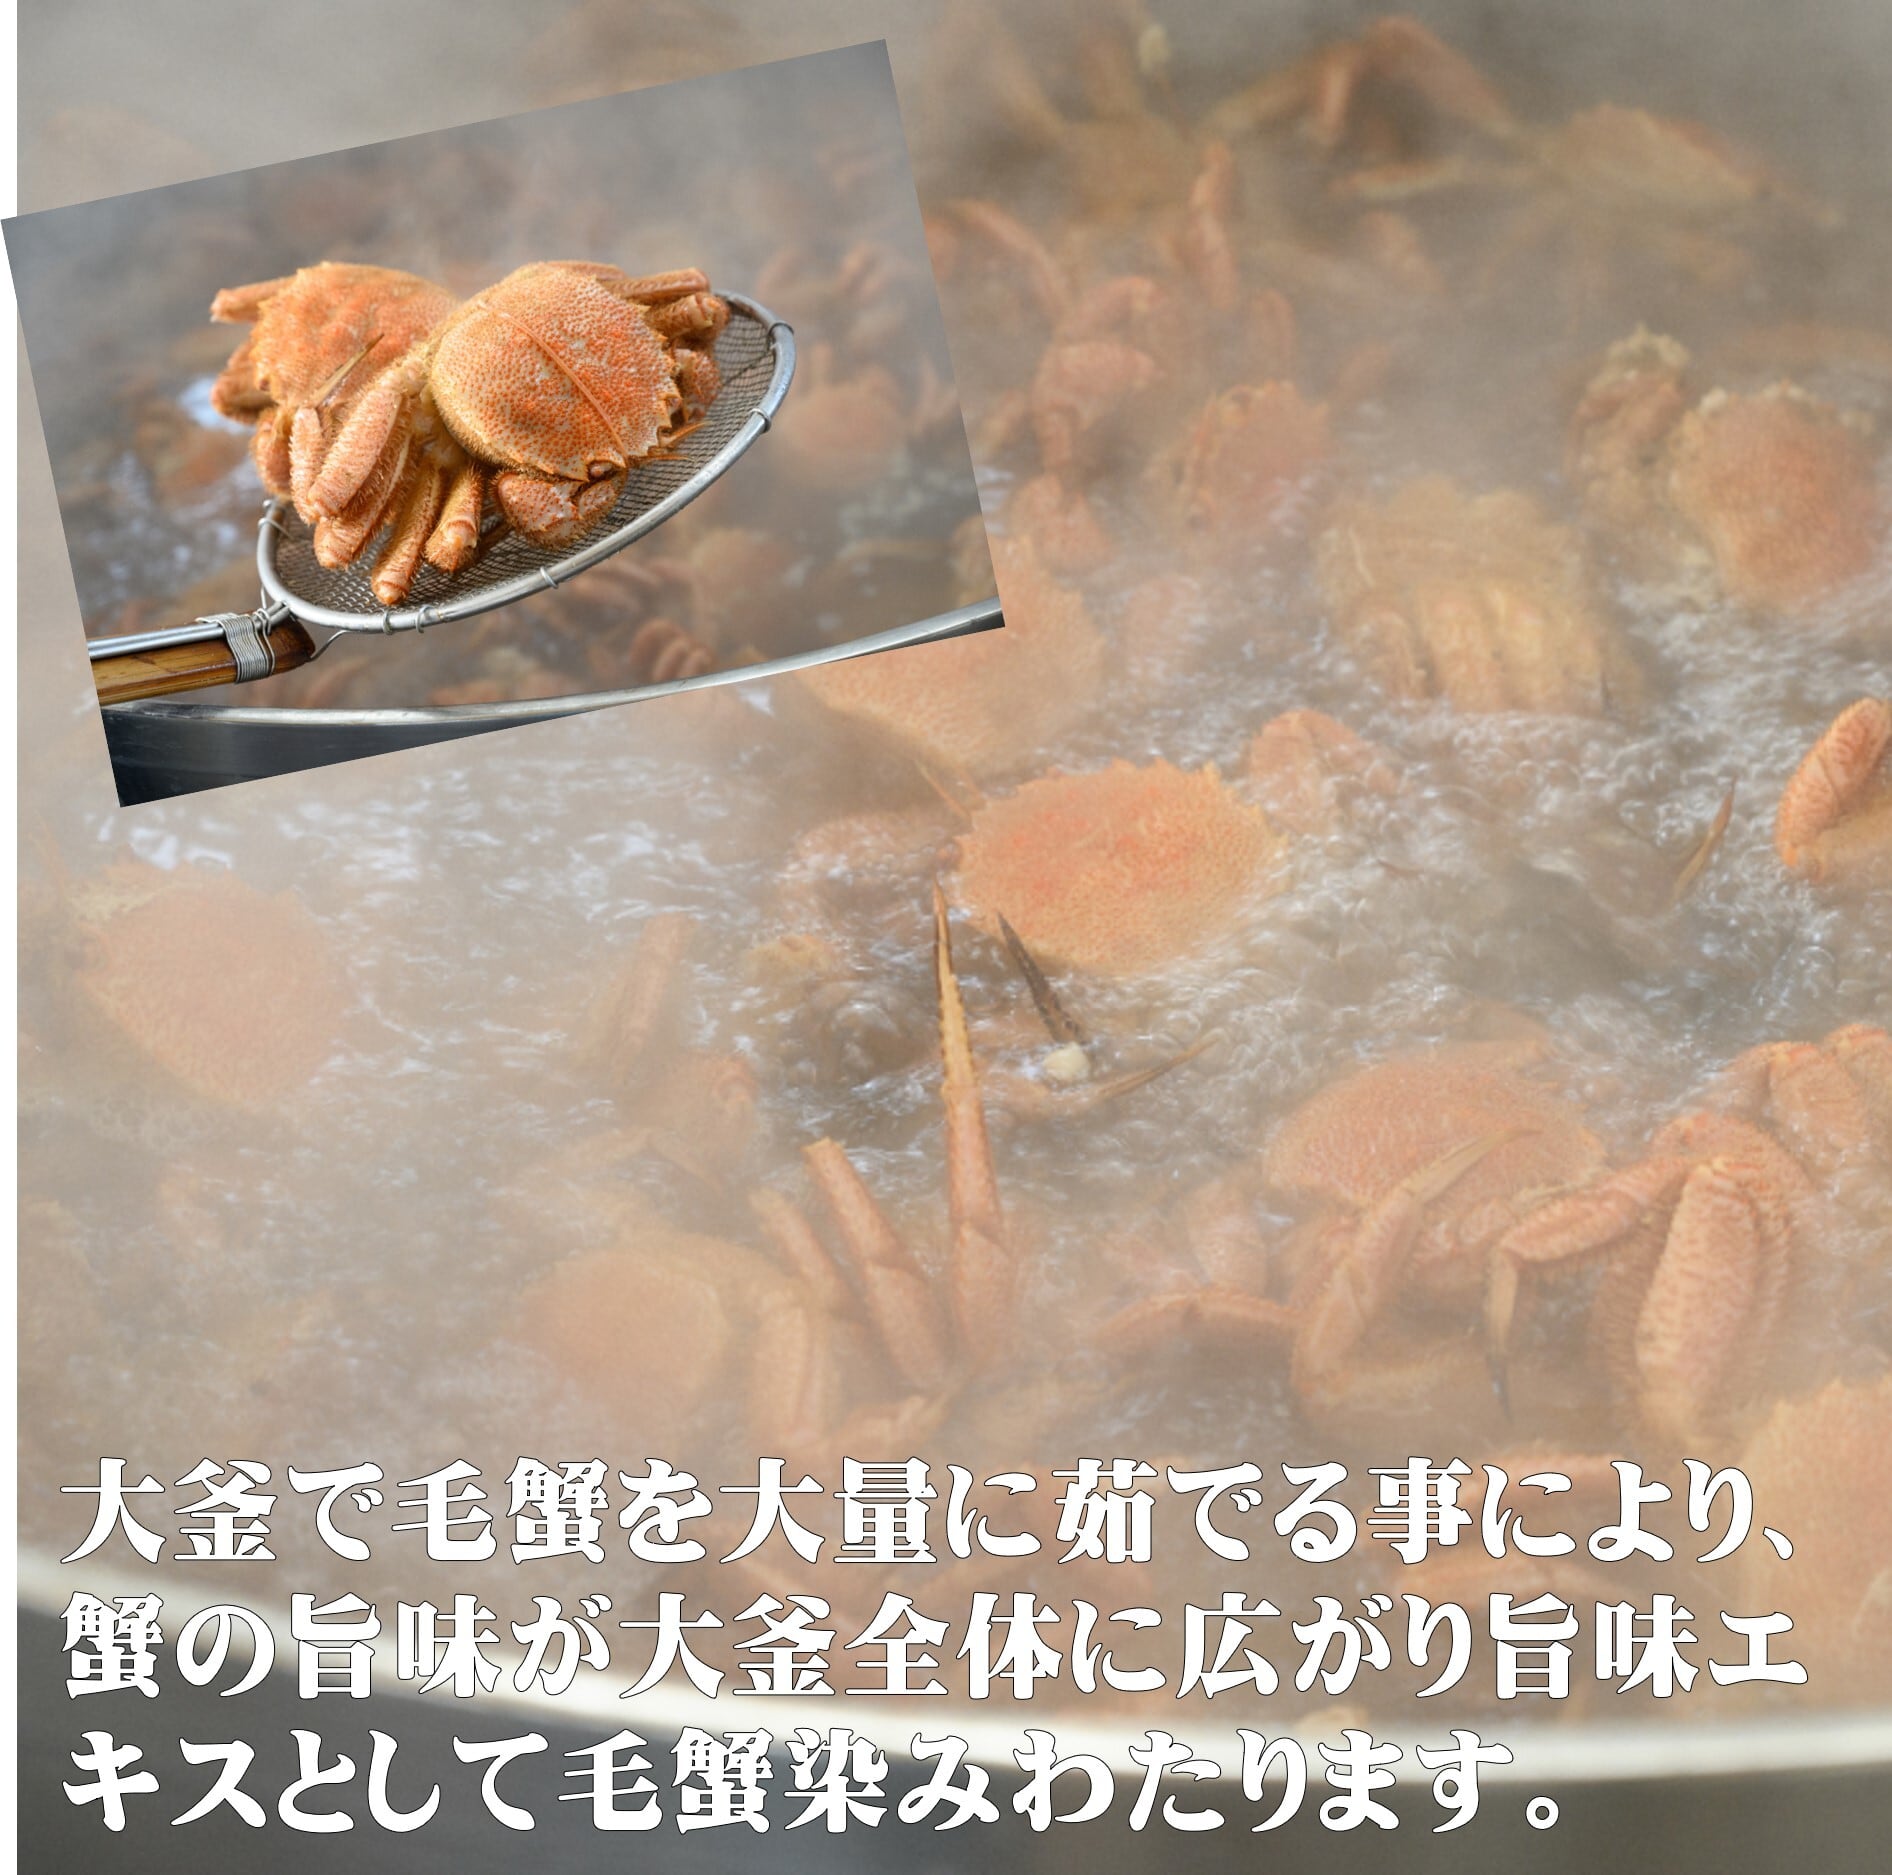 北海道産 毛蟹 3杯セット 北海道を代表する蟹 冷凍 ボイル 超お買い得